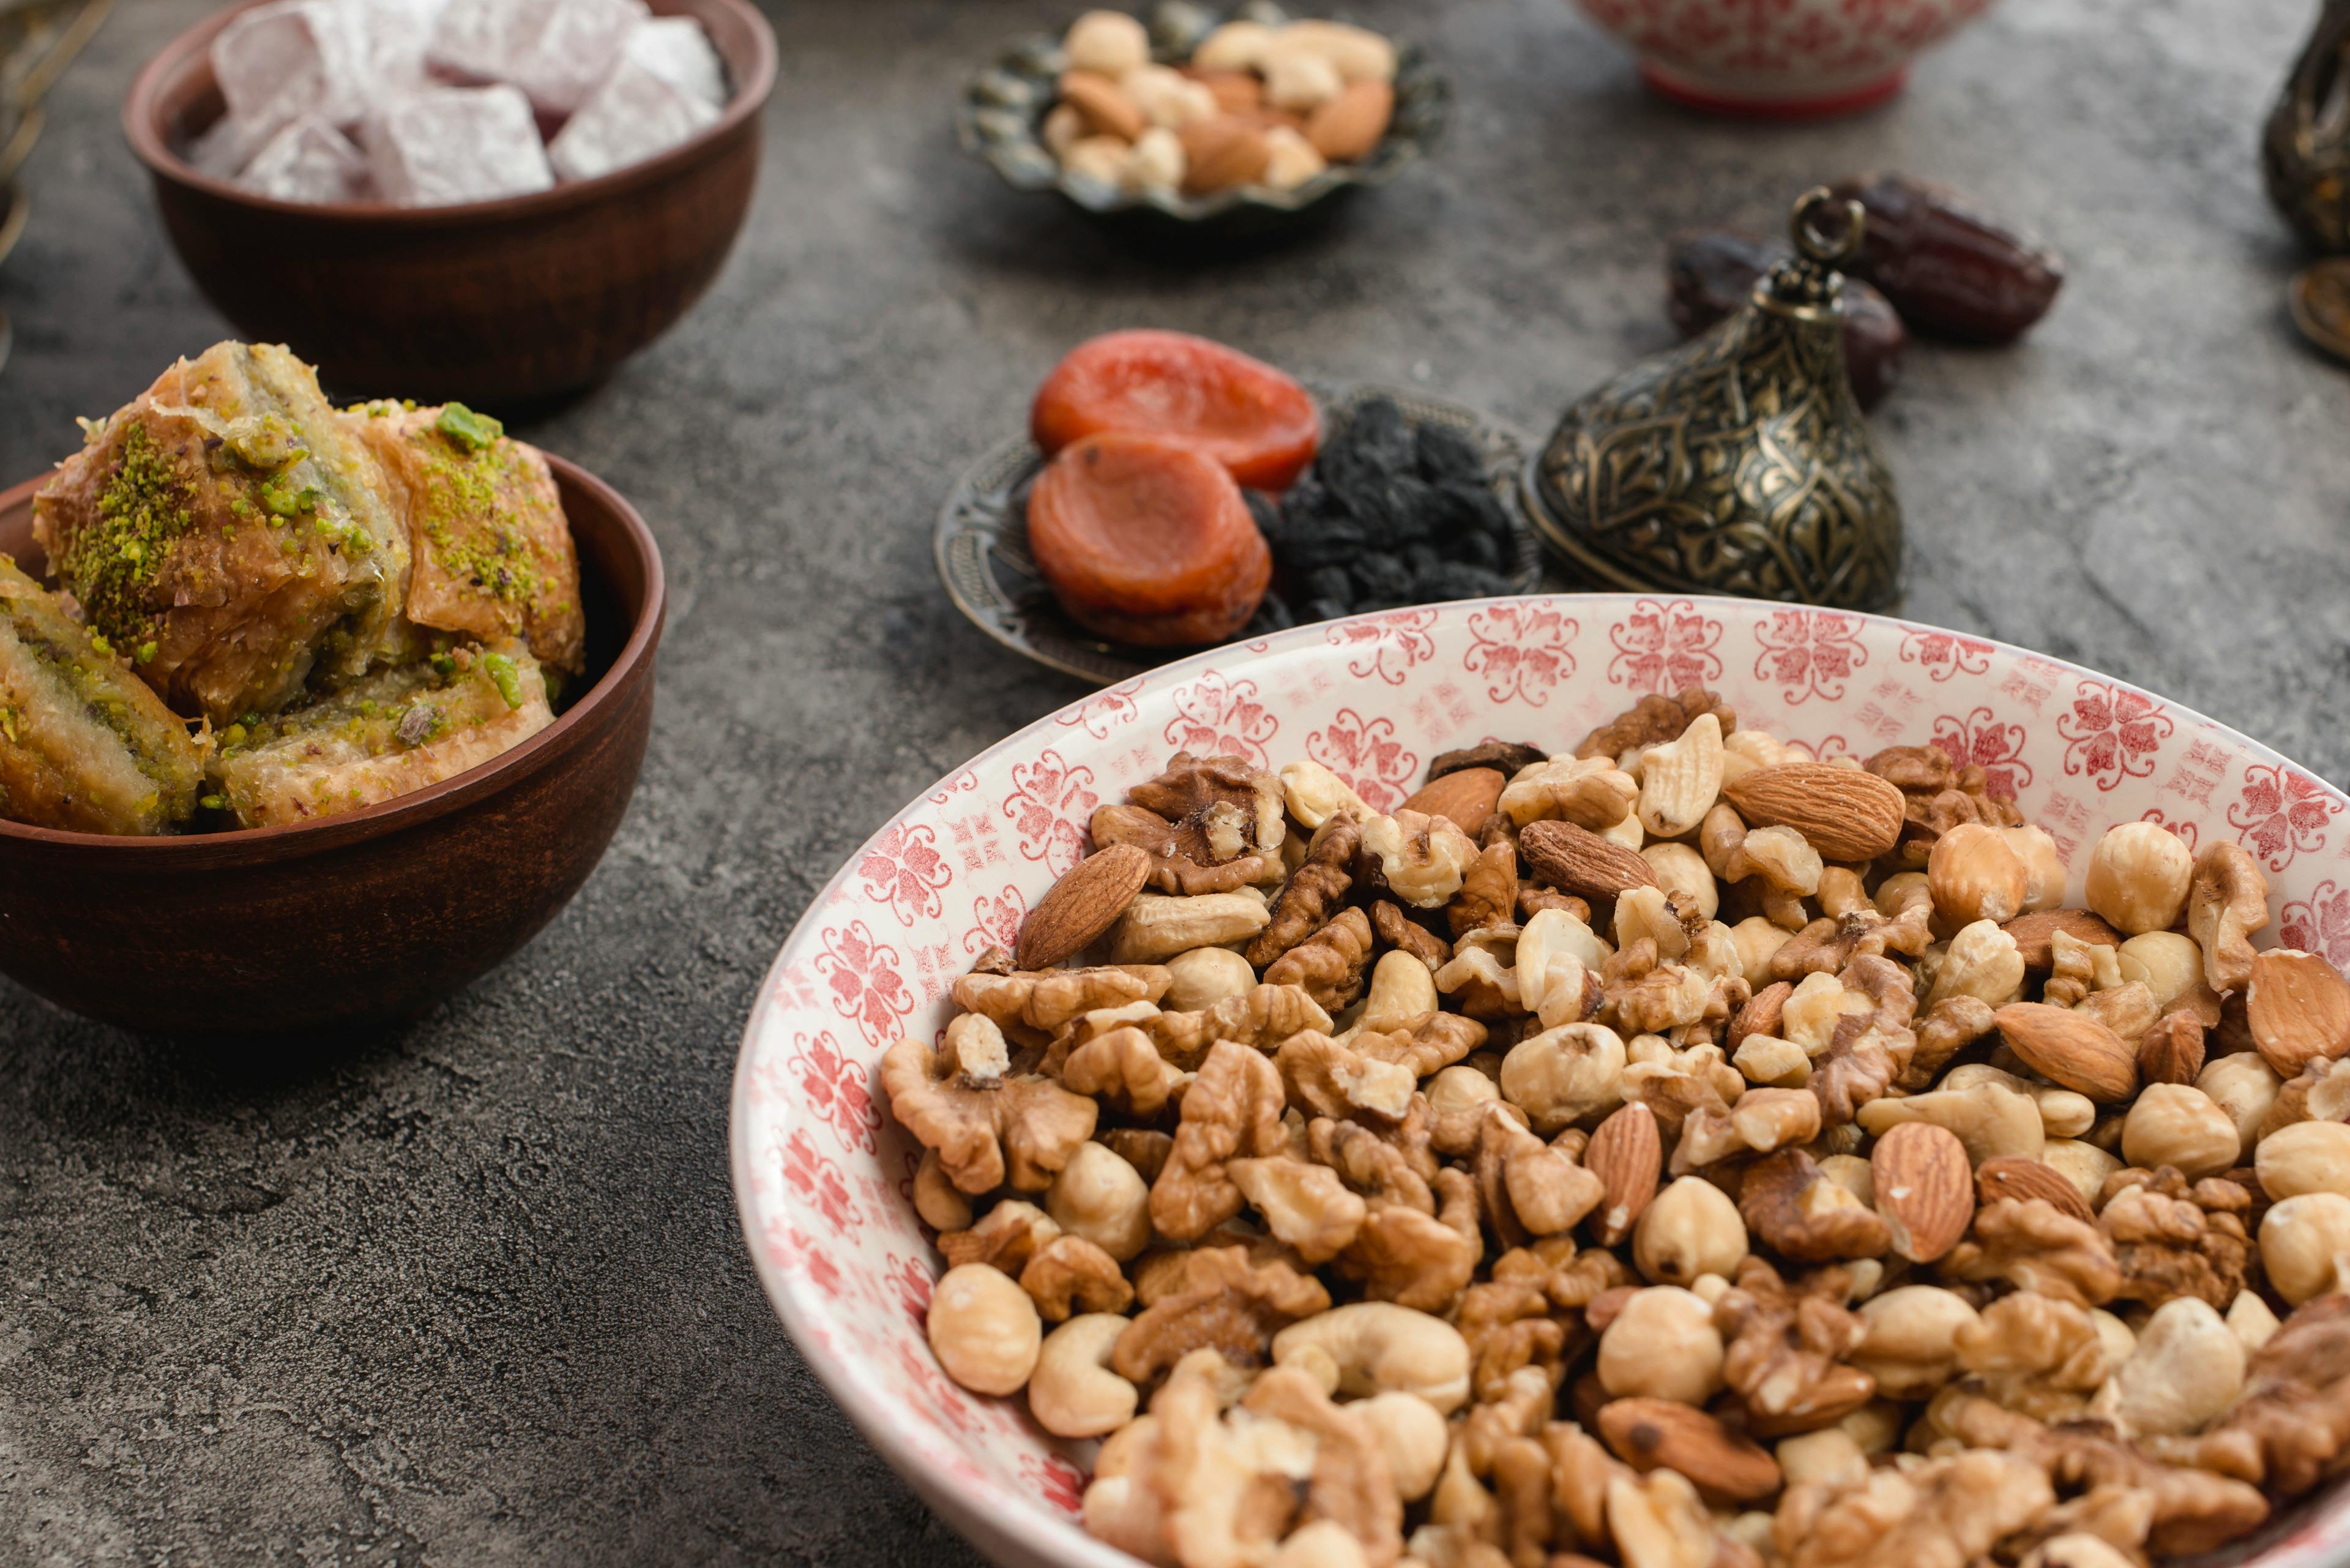 Ramazan Bayramında Beslenme Önerileri